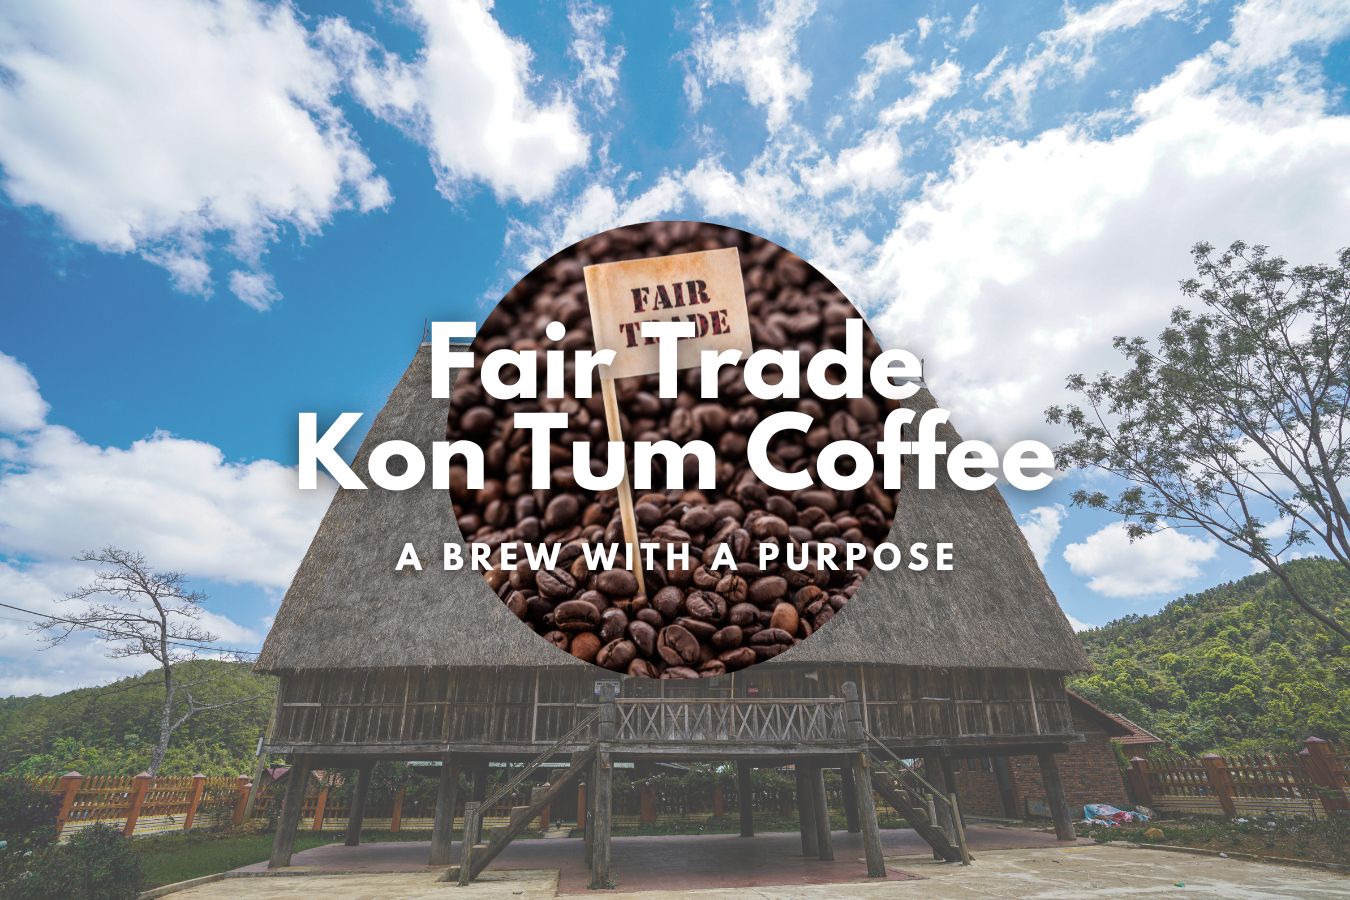 Fair Trade Kon Tum Coffee: A Brew with a Purpose